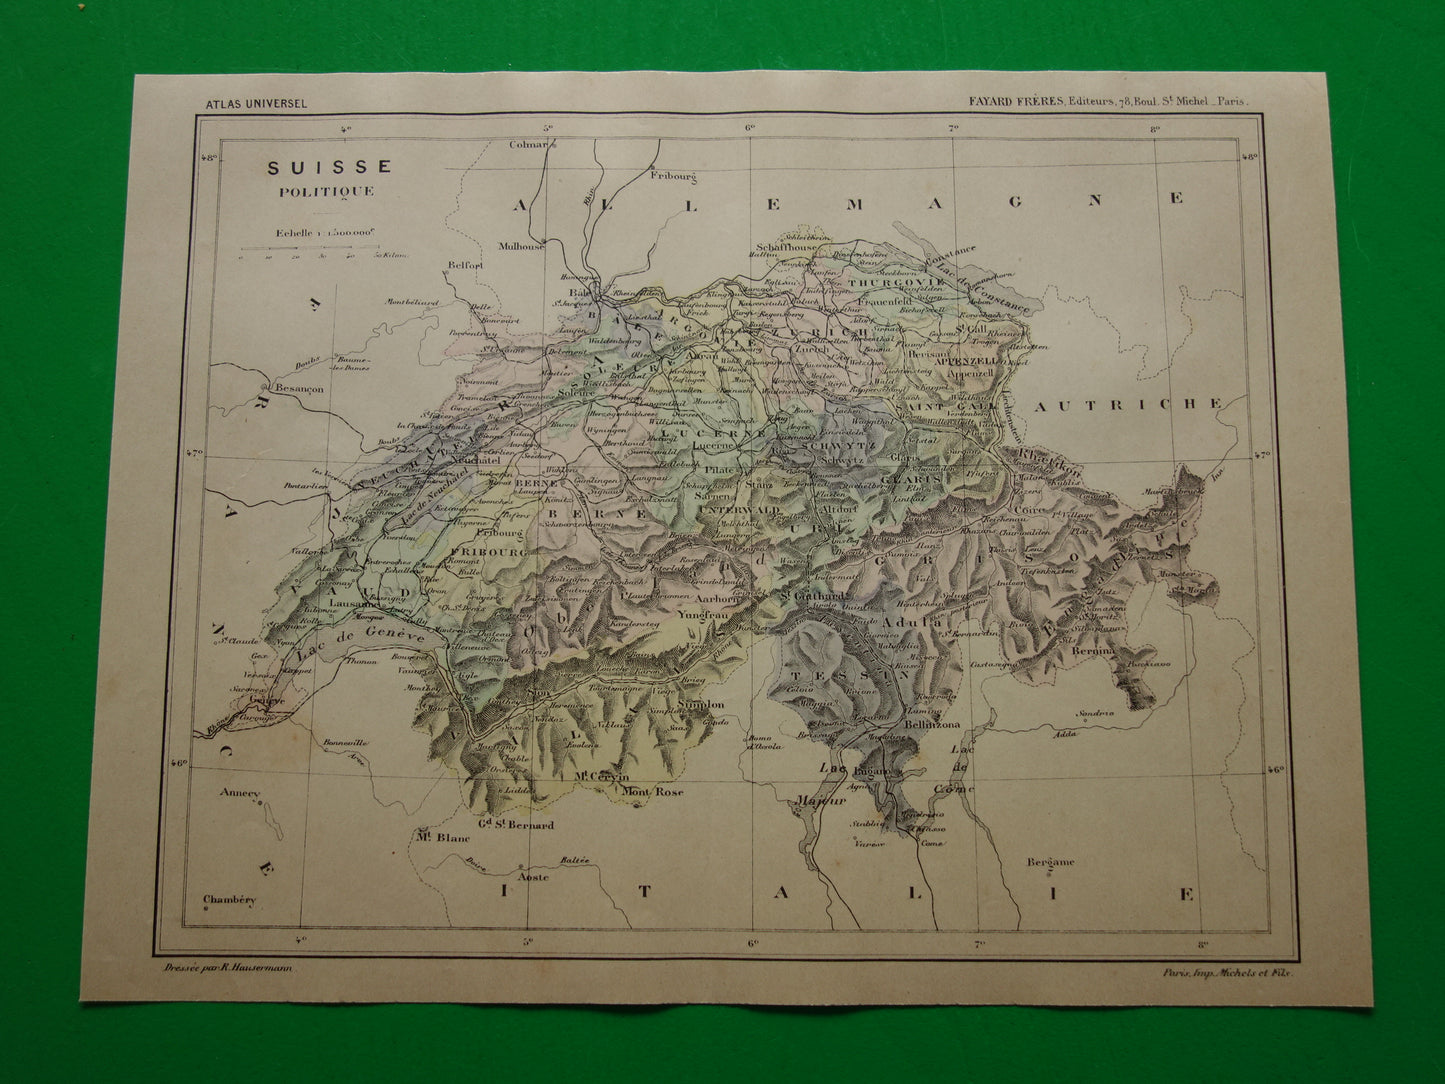 ZWITSERLAND oude landkaart van Zwitserland uit het jaar 1896 origineel handgekleurde antieke kaart historische print Zwitserland